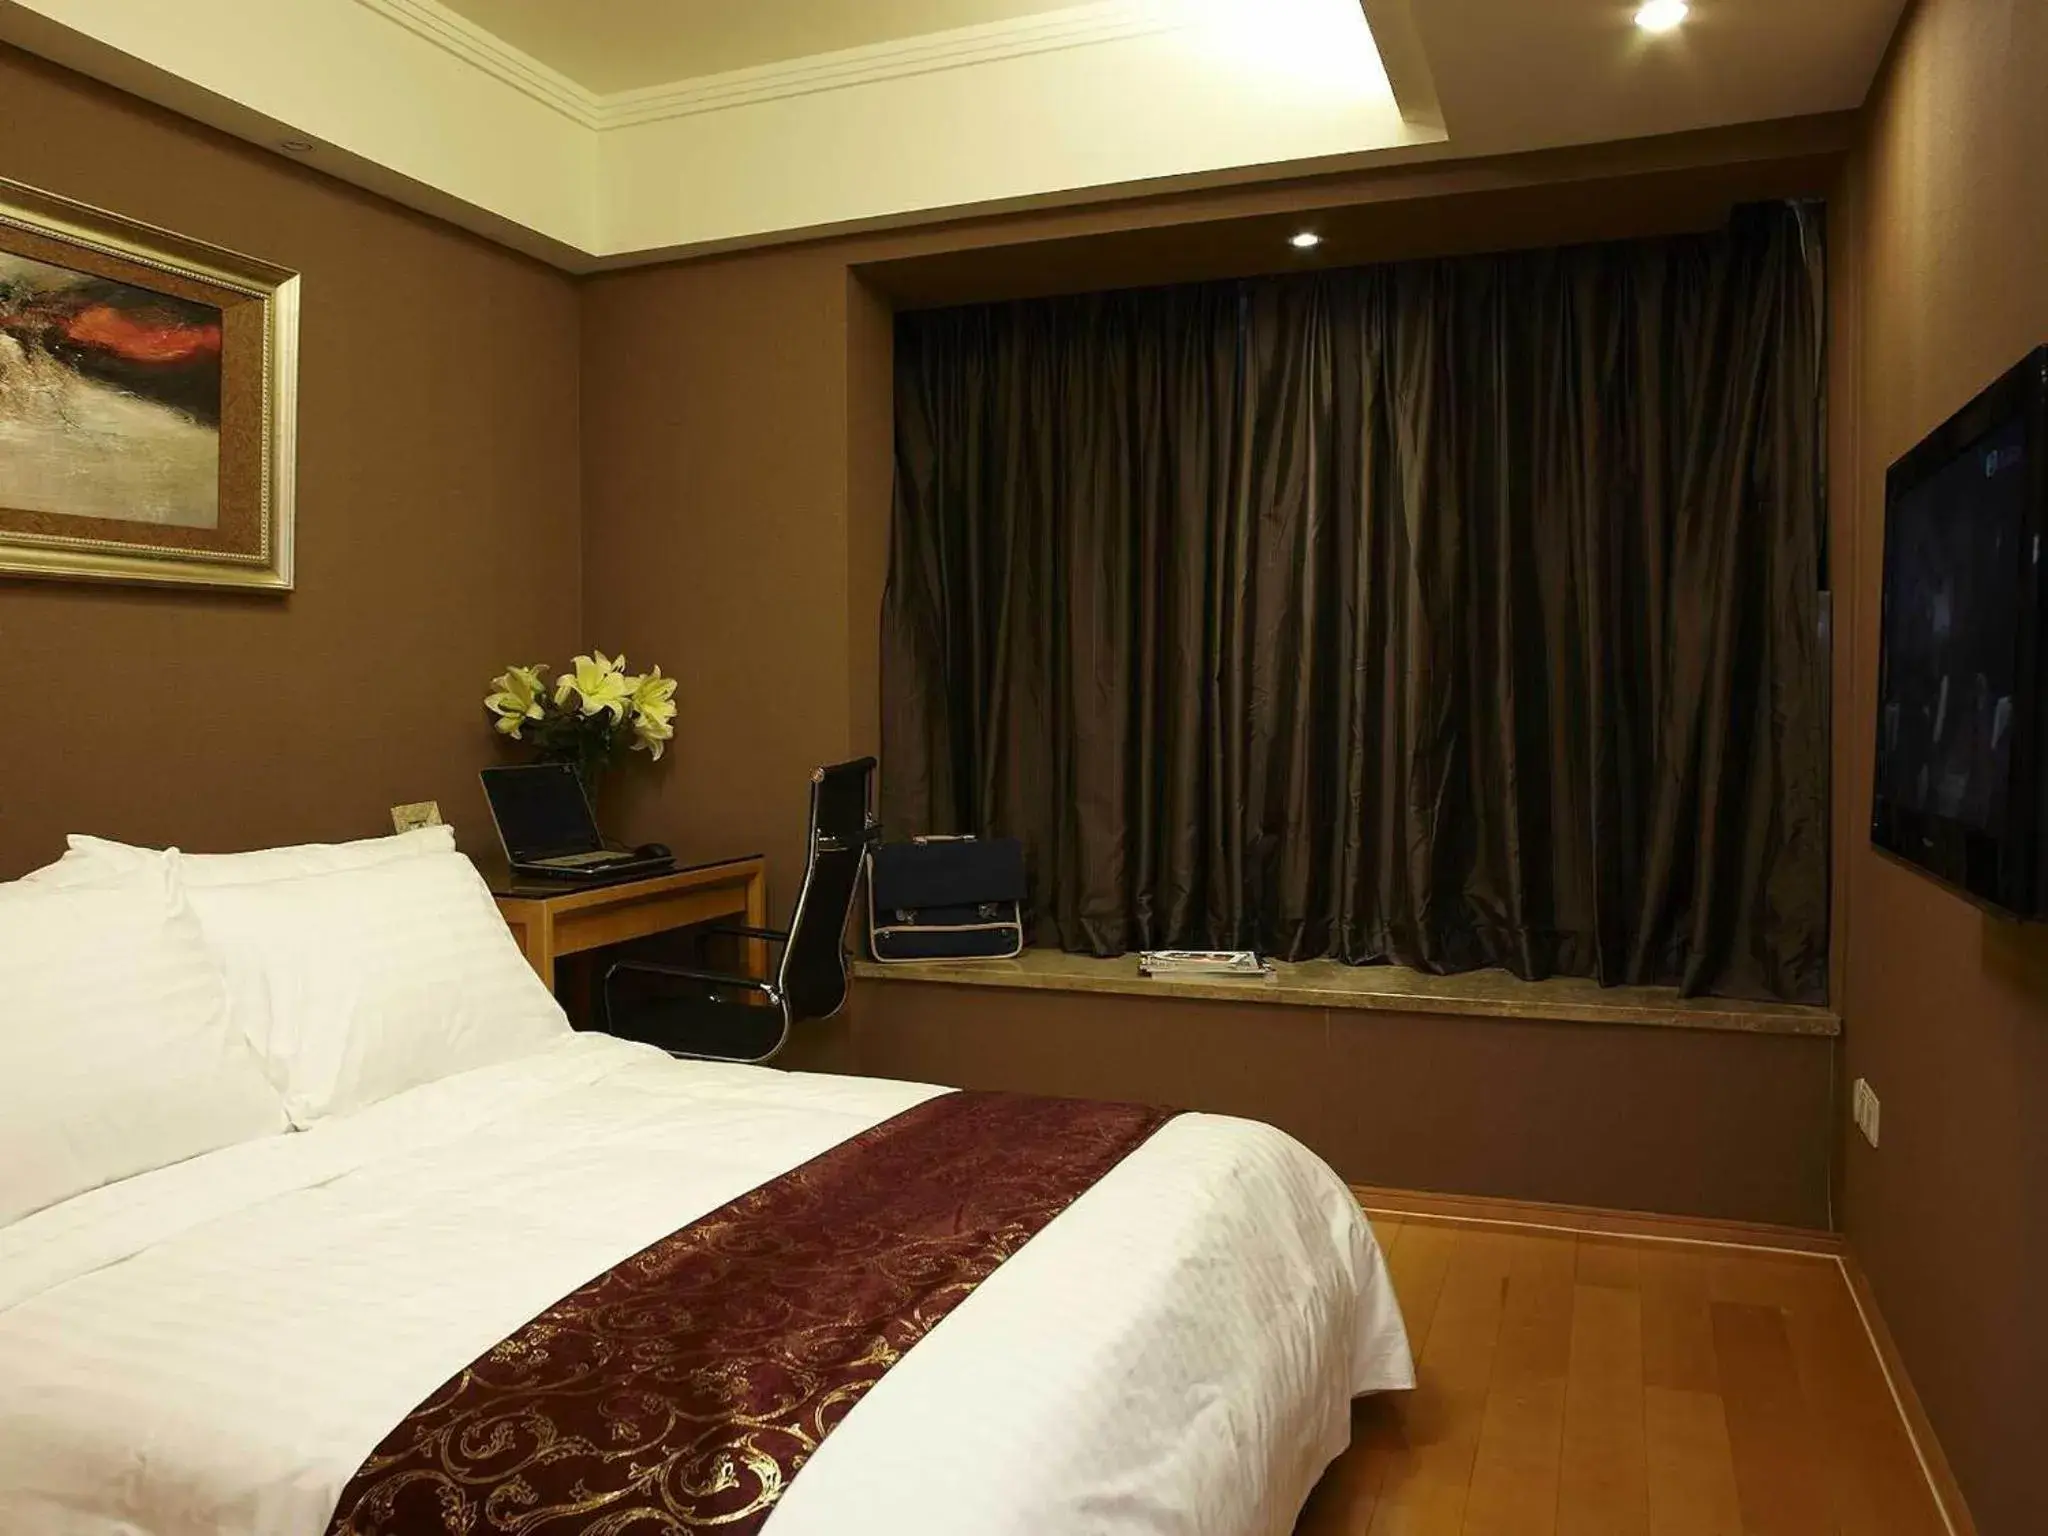 Bed in Dan Executive Hotel Apartment Zhujiang New Town